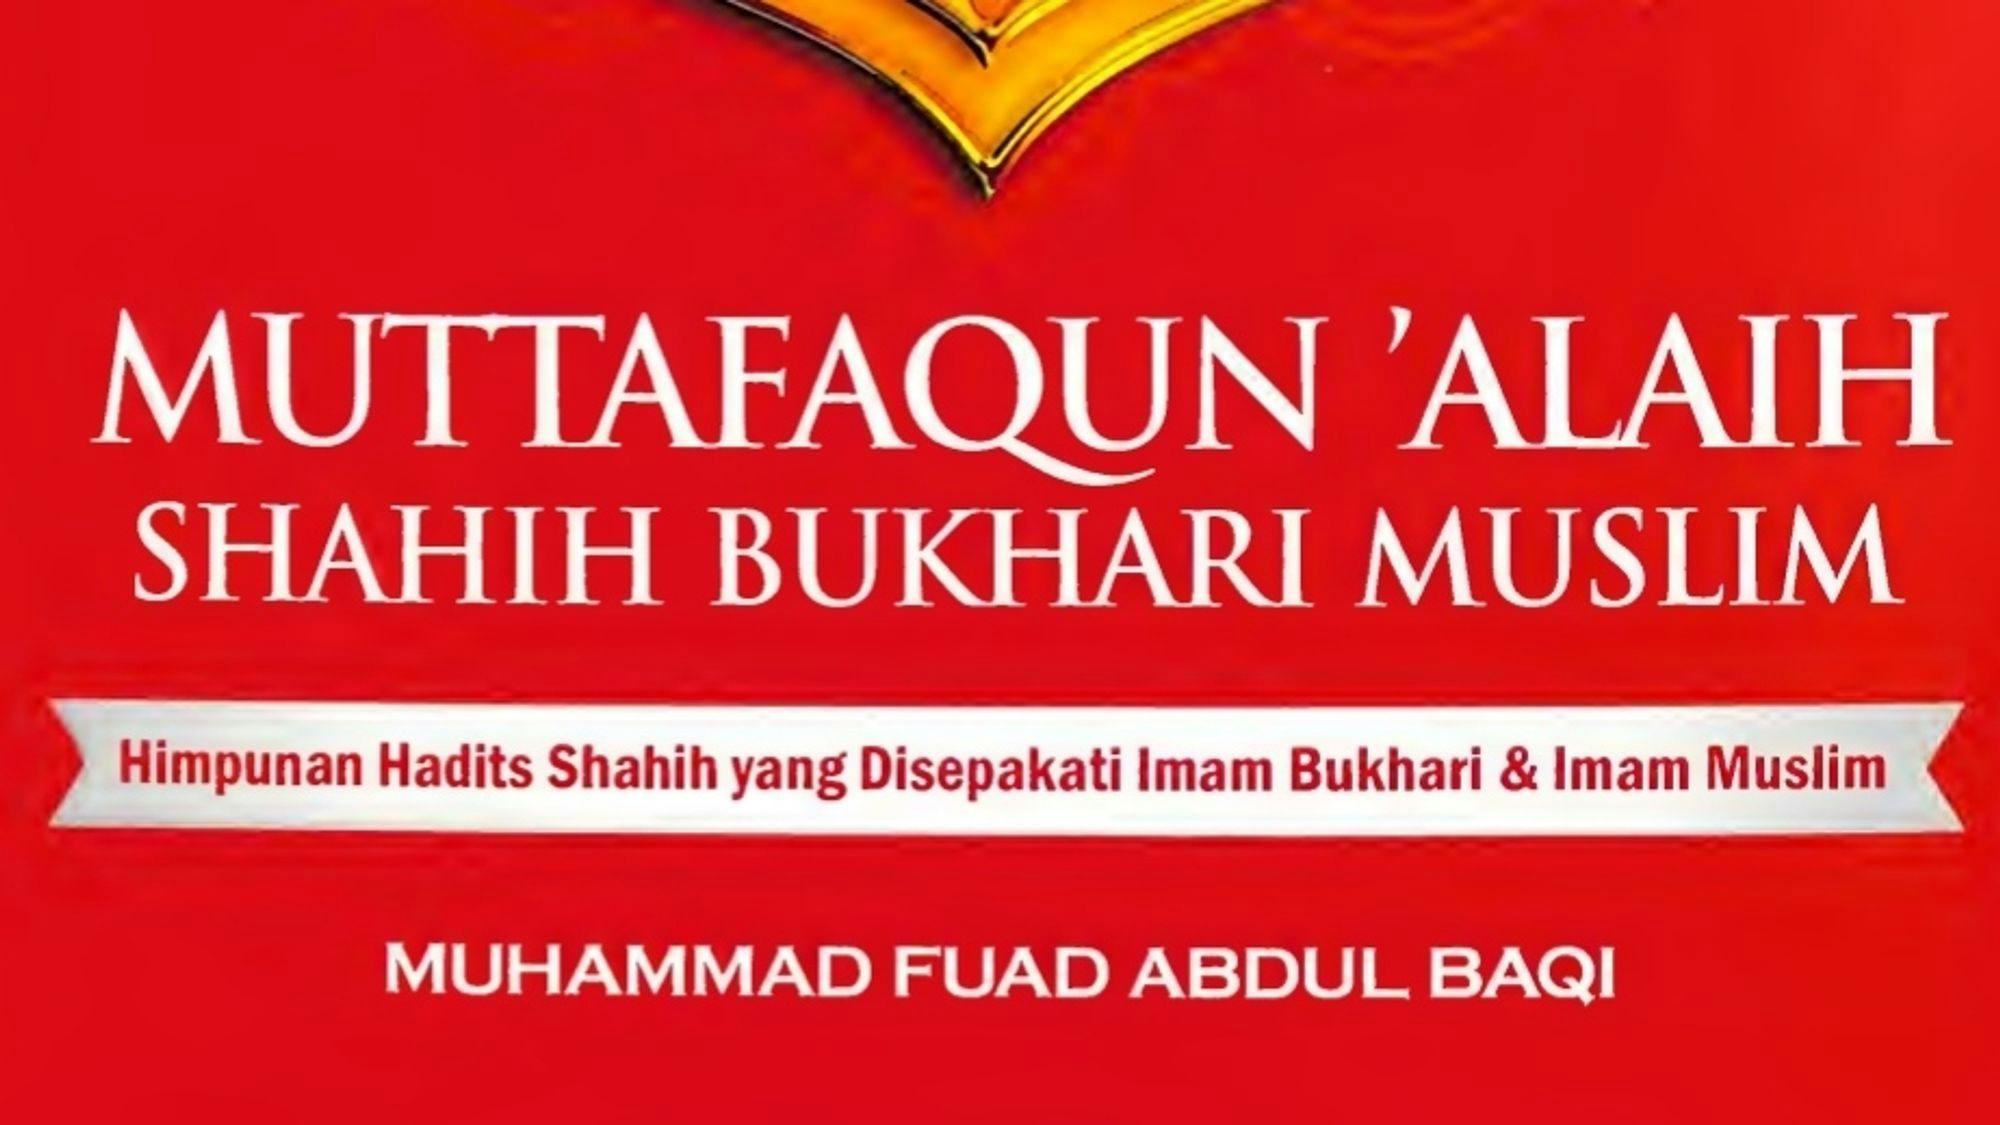 Mutafaqun ‘Alaih Shahih Bukhari